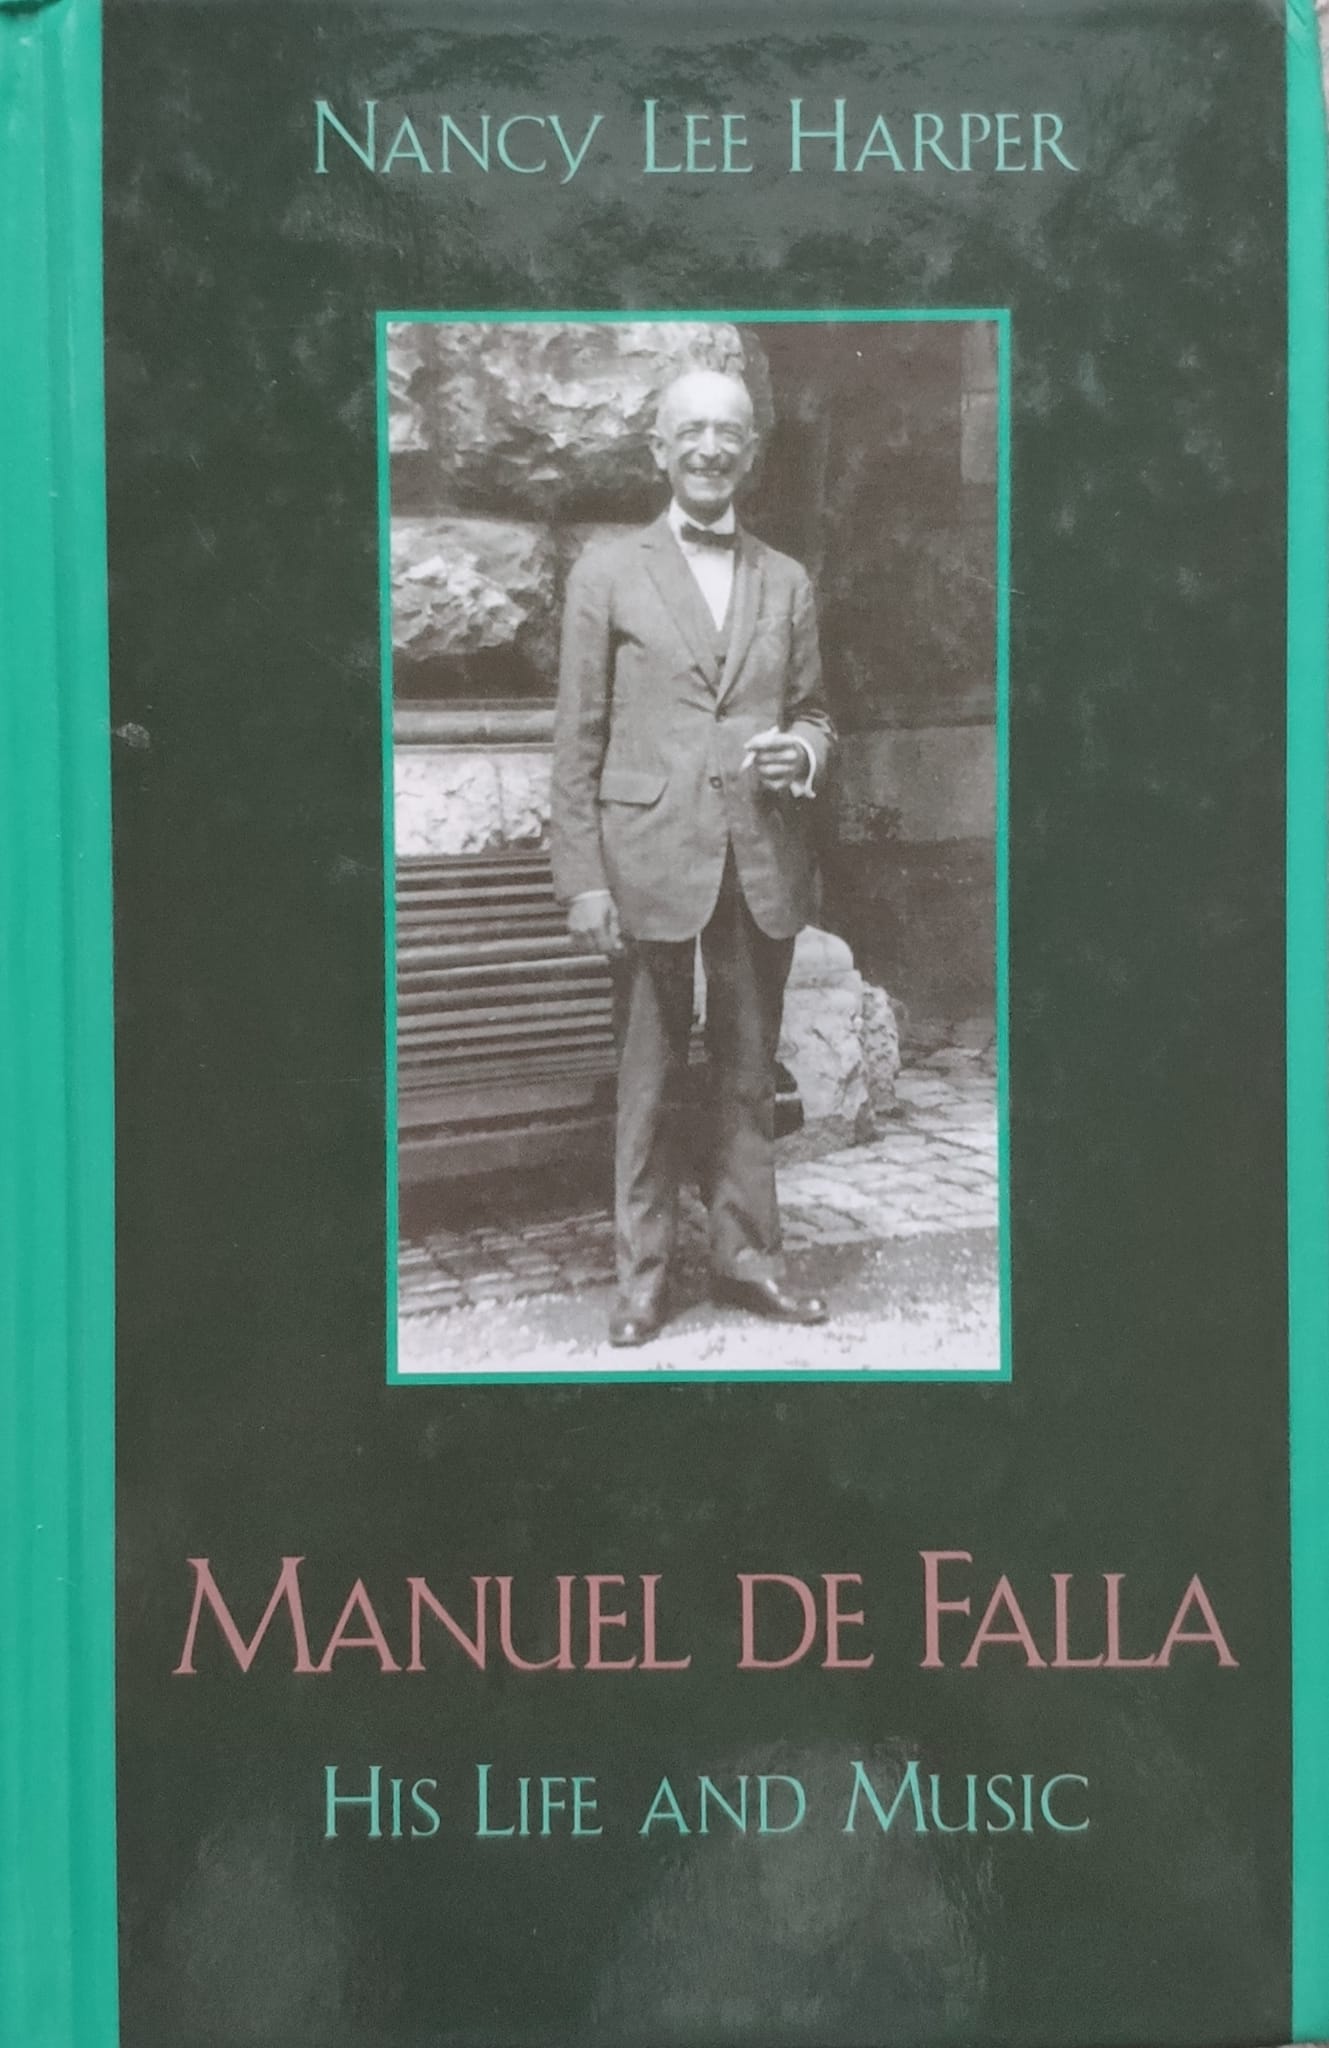 manuel de falla his life and music                                                                   nancy lee harper                                                                                    